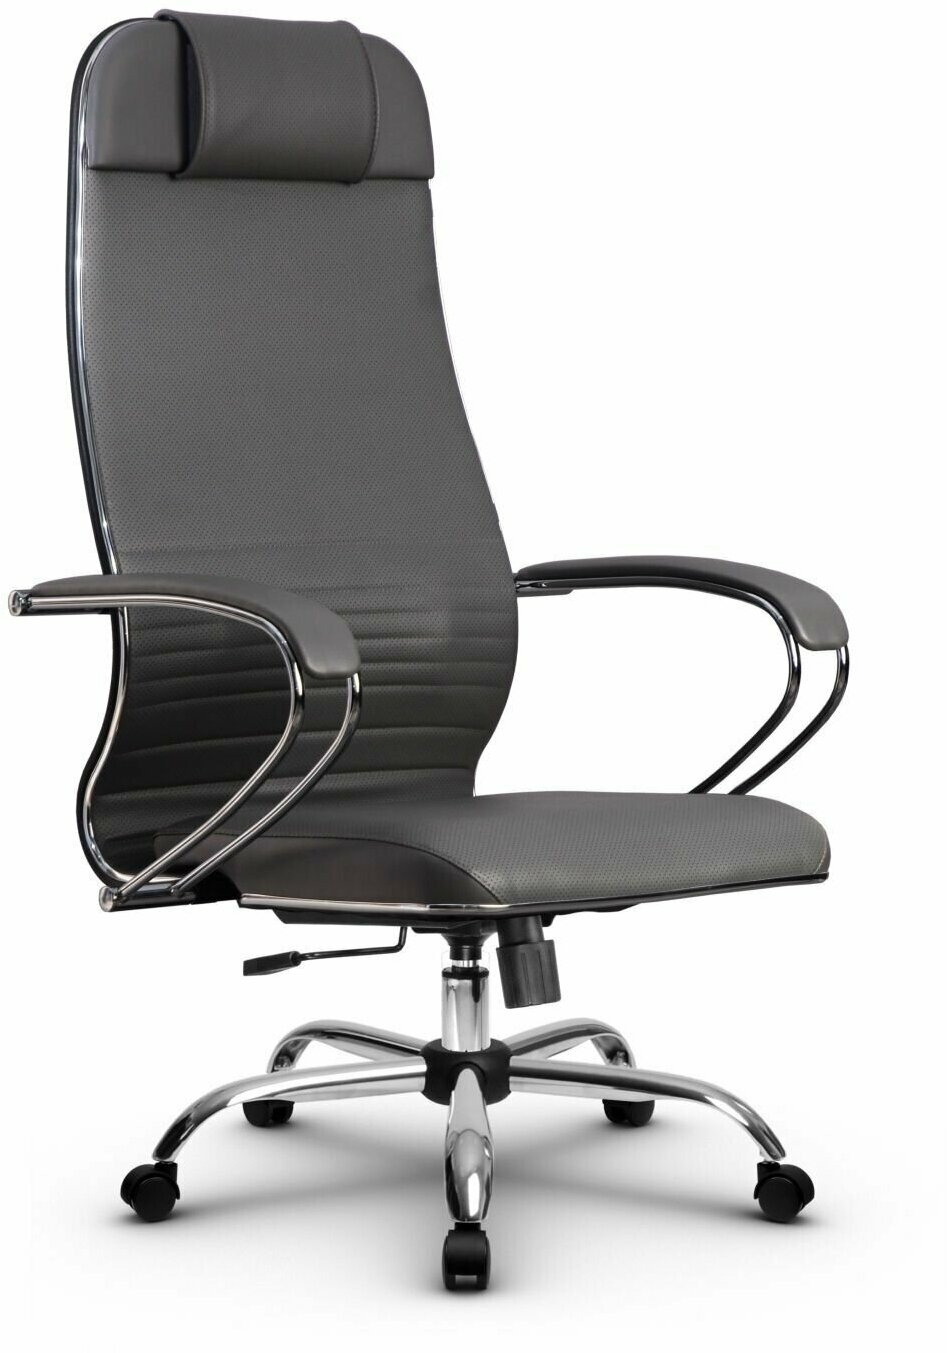 Компьютерное офисное кресло Metta L 1m 38К2/К, Топган, осн. 17833, Серое